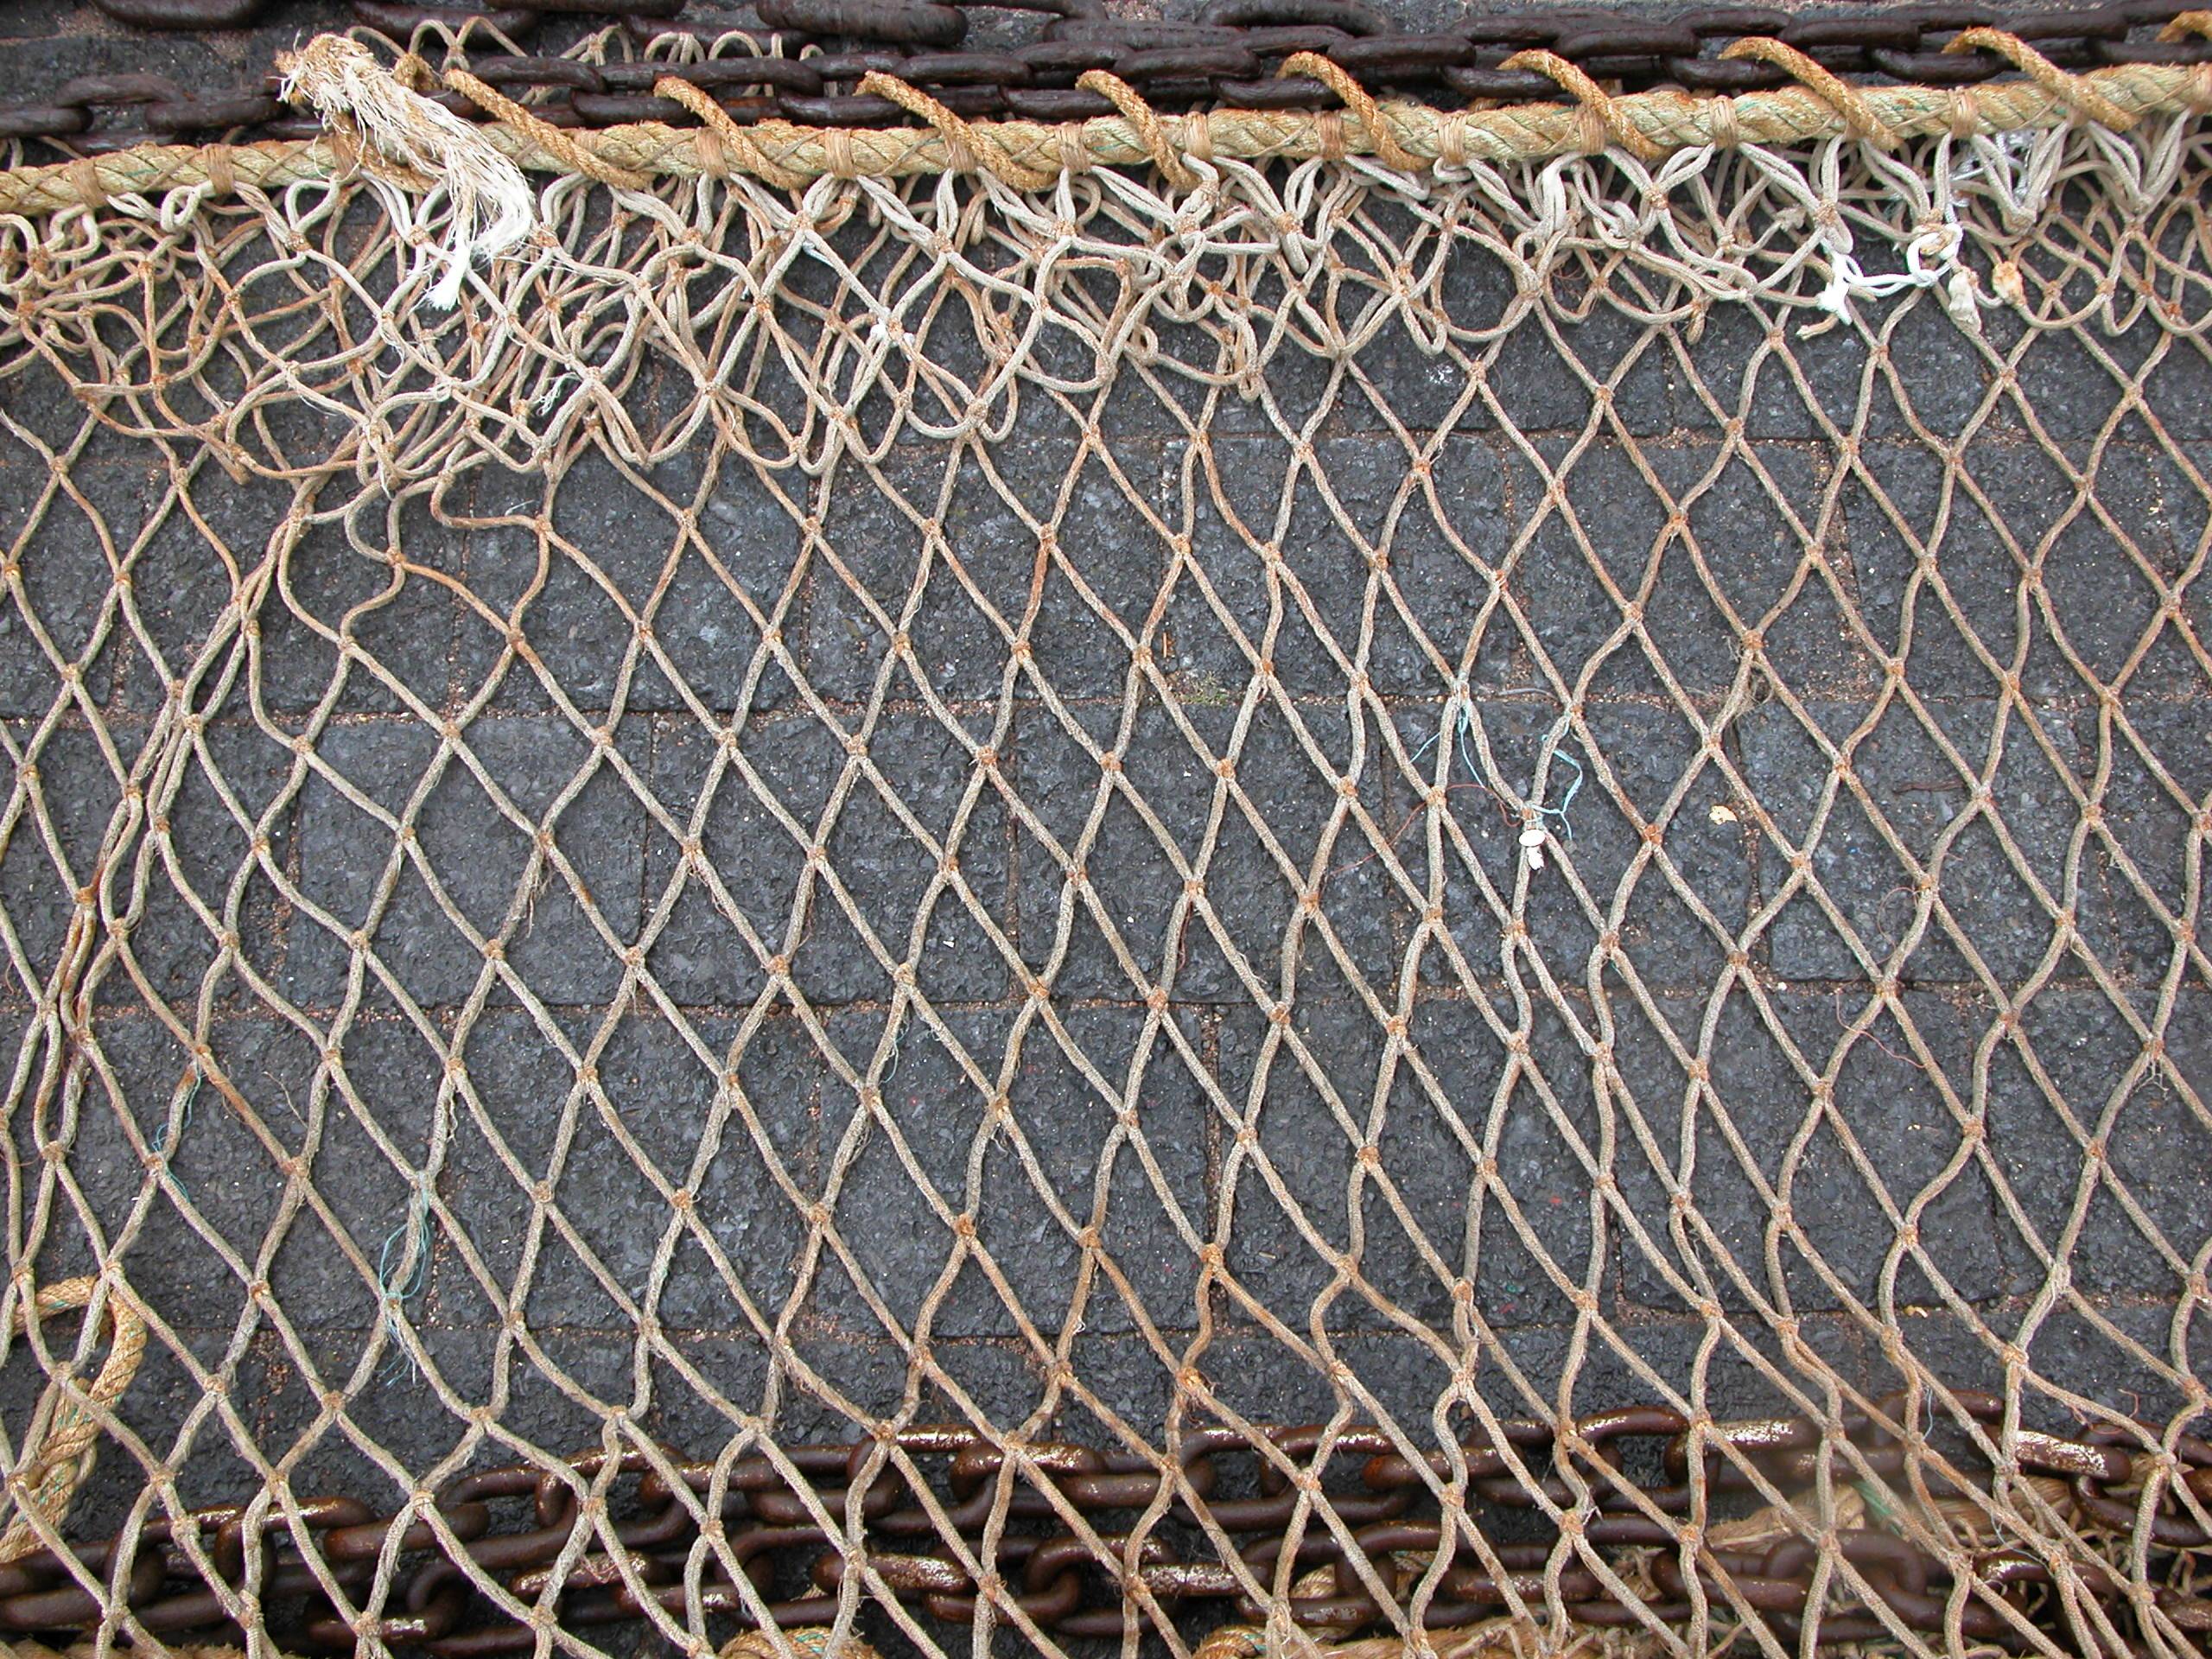 Виды сетей для ловли рыбы